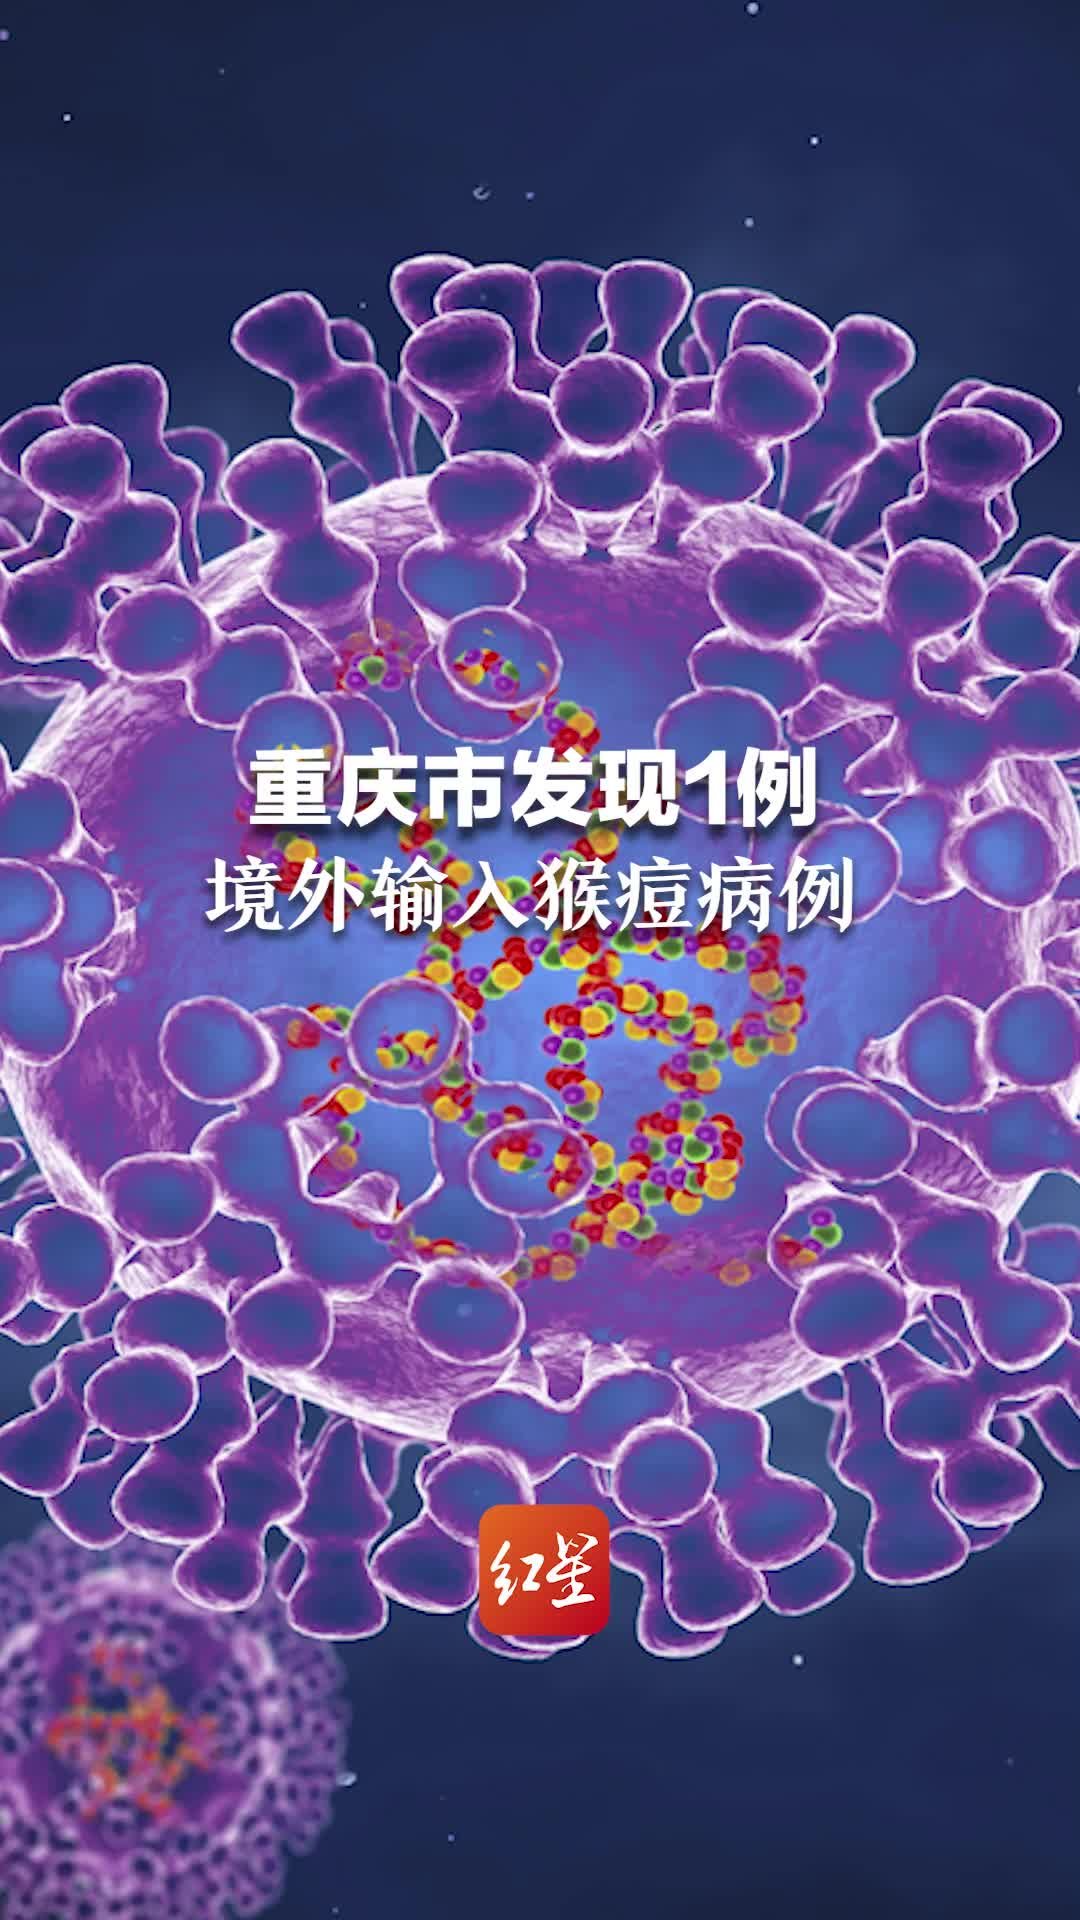 据央视新闻消息，重庆市发现1例境外输入猴痘病例